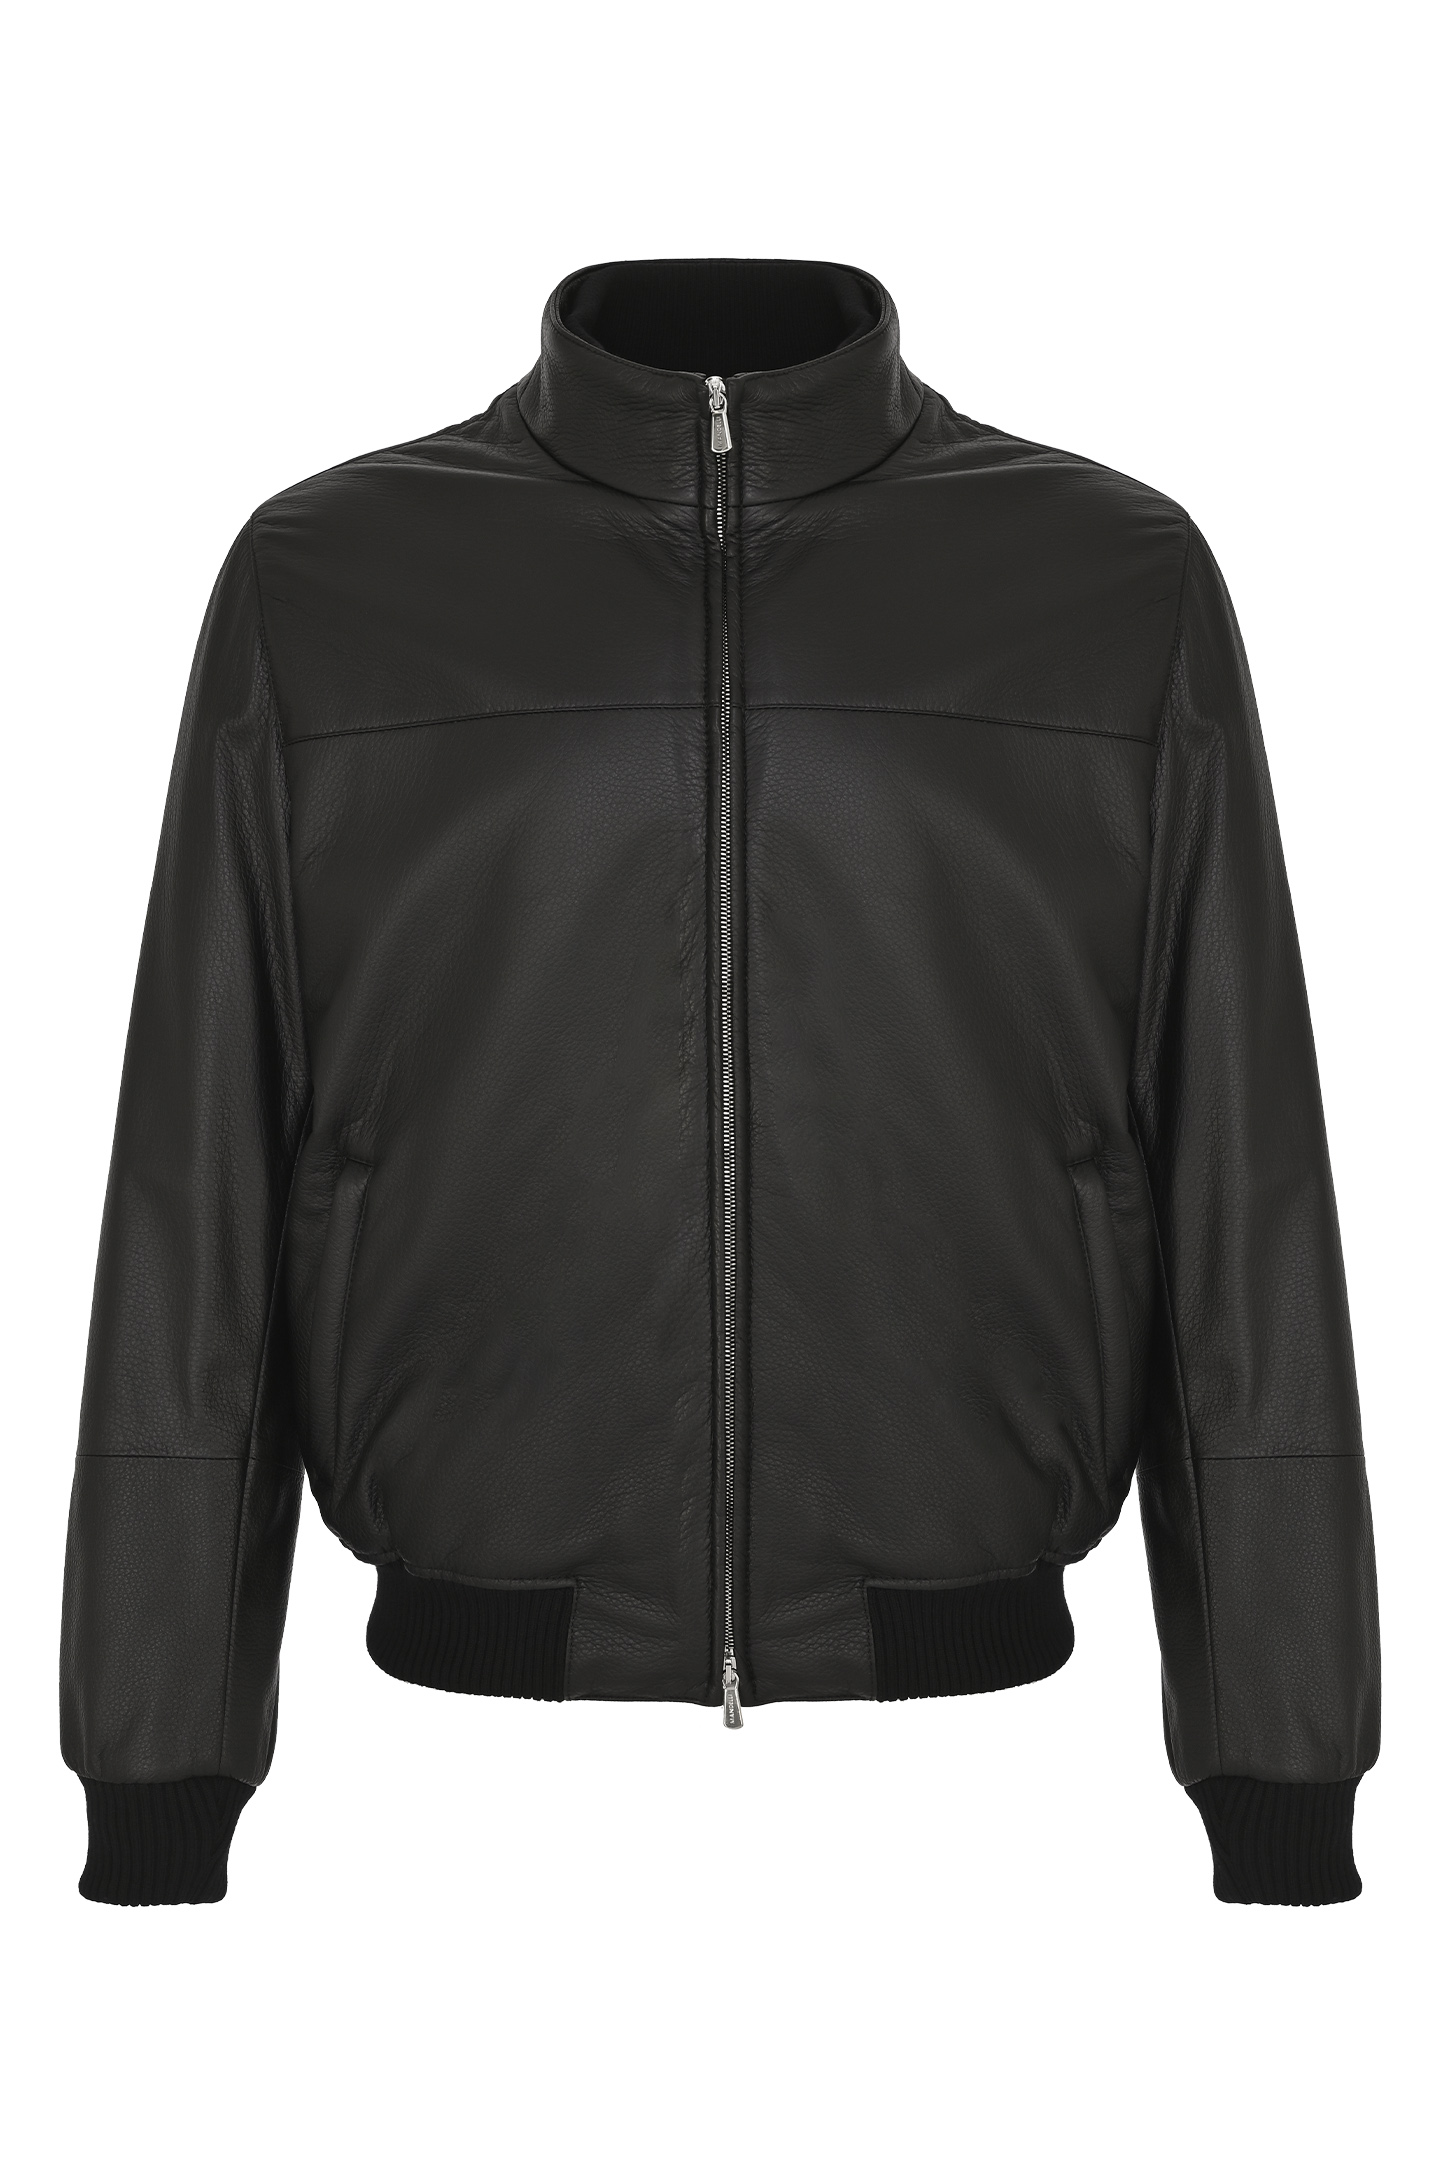 Куртка MANDELLI A23-A7T102-5901, цвет: Черный, Мужской